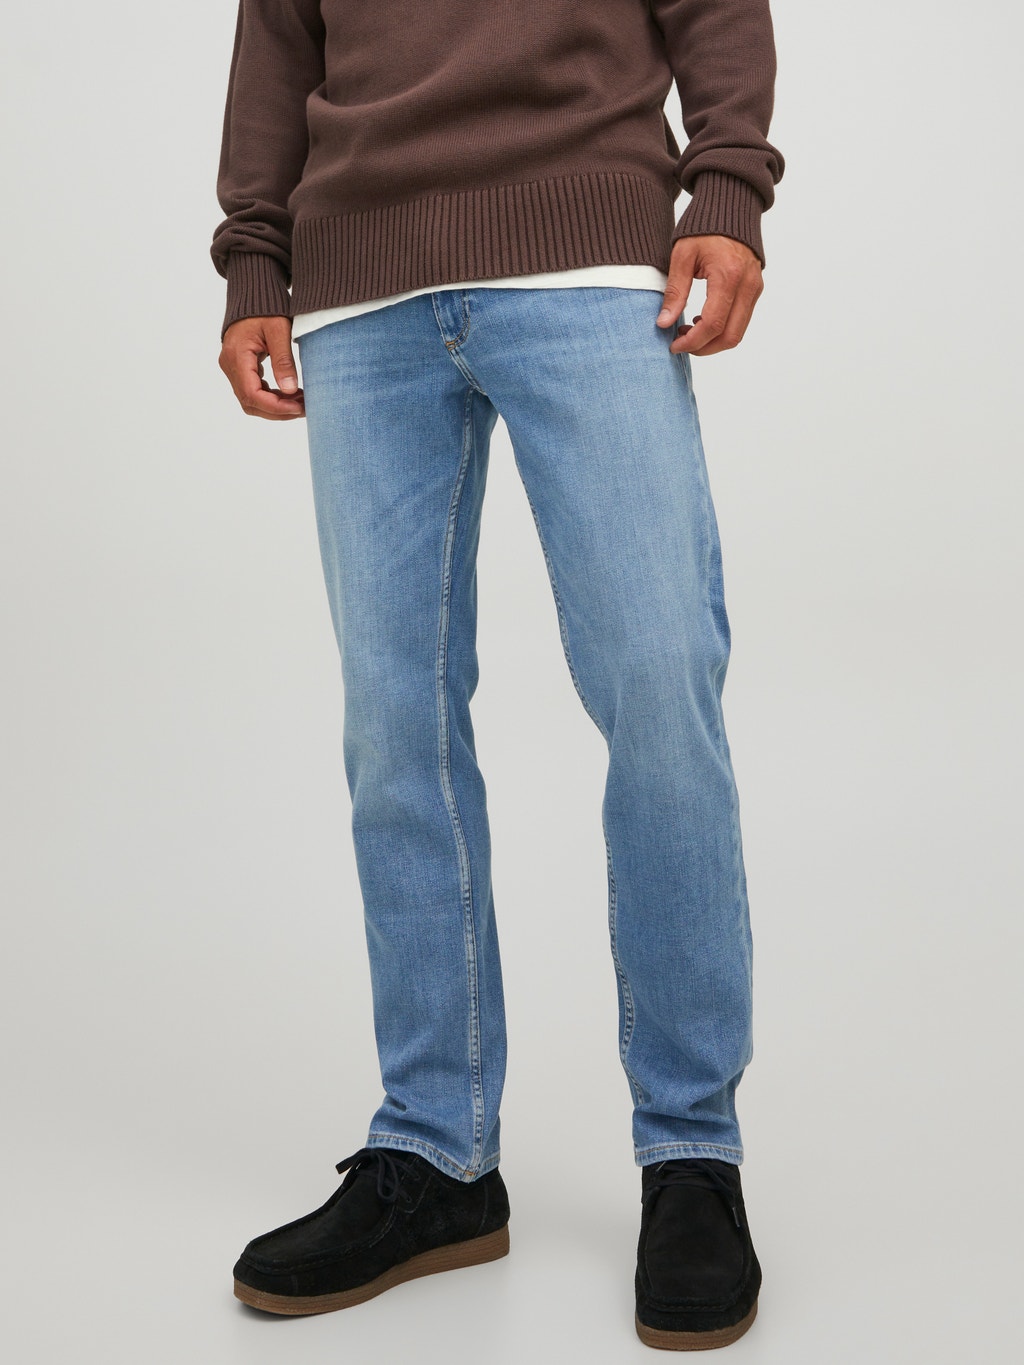 dat is alles Sinds ras Clark Evan CJ 331 Regular fit jeans with 20% discount! | Jack & Jones®